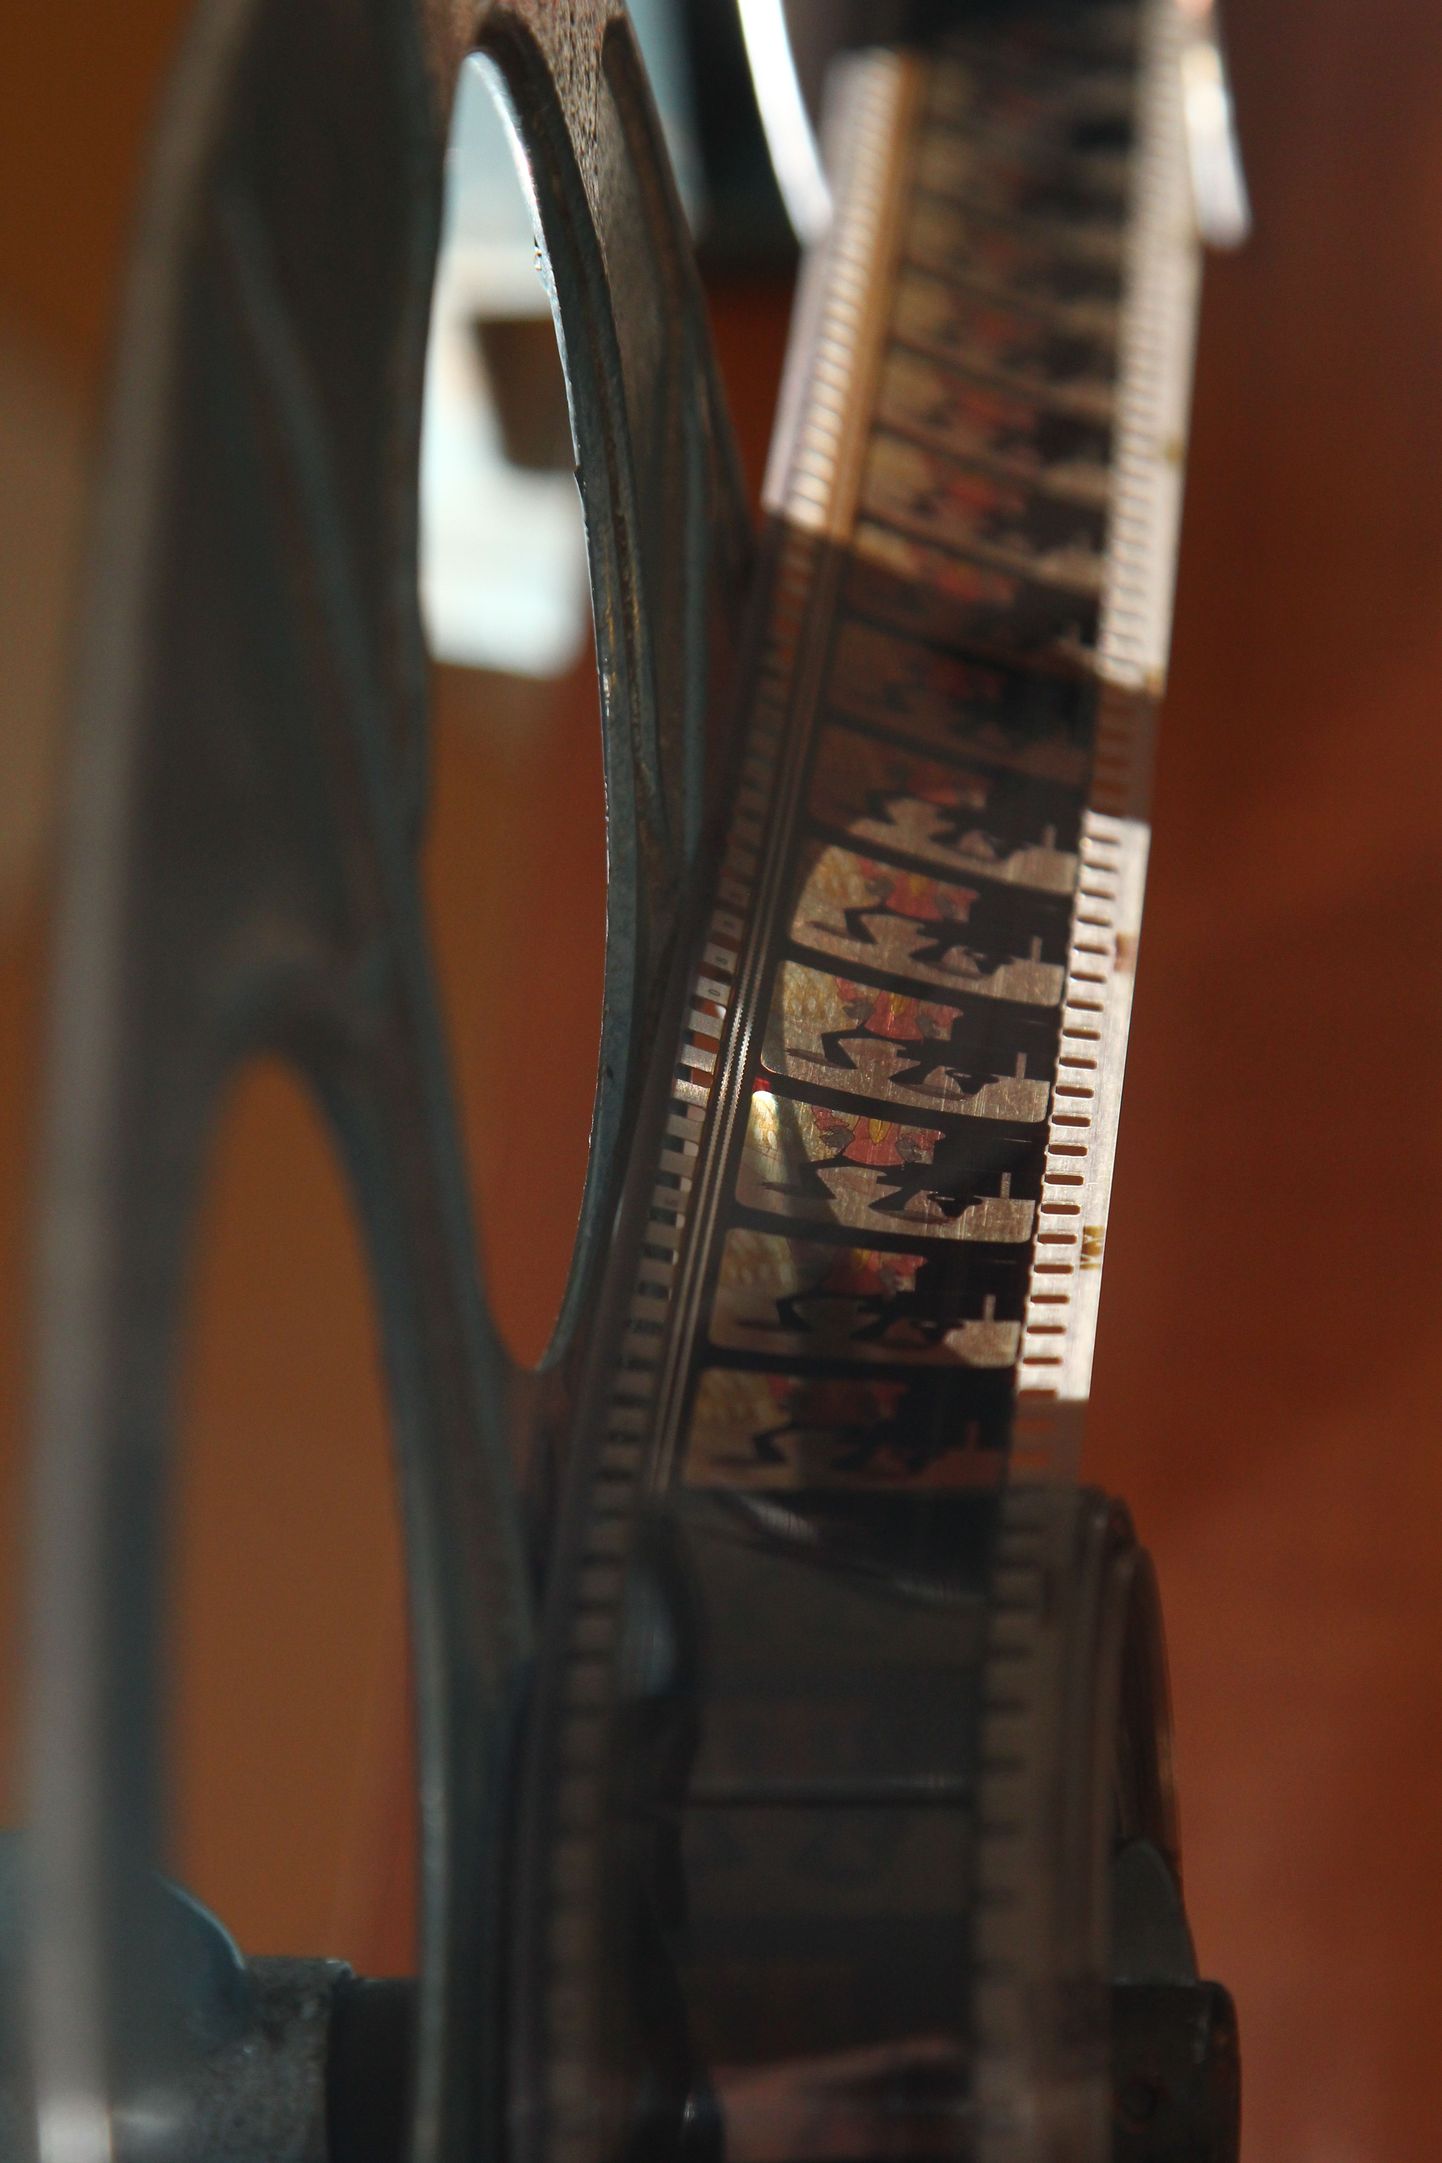 Kinole mõeldes meenub koheselt suriseval kinomasinal jooksev filmirull – mis siis, et tänapäeval kino näitamiseks peamiselt digitehnikat kasutatakse.